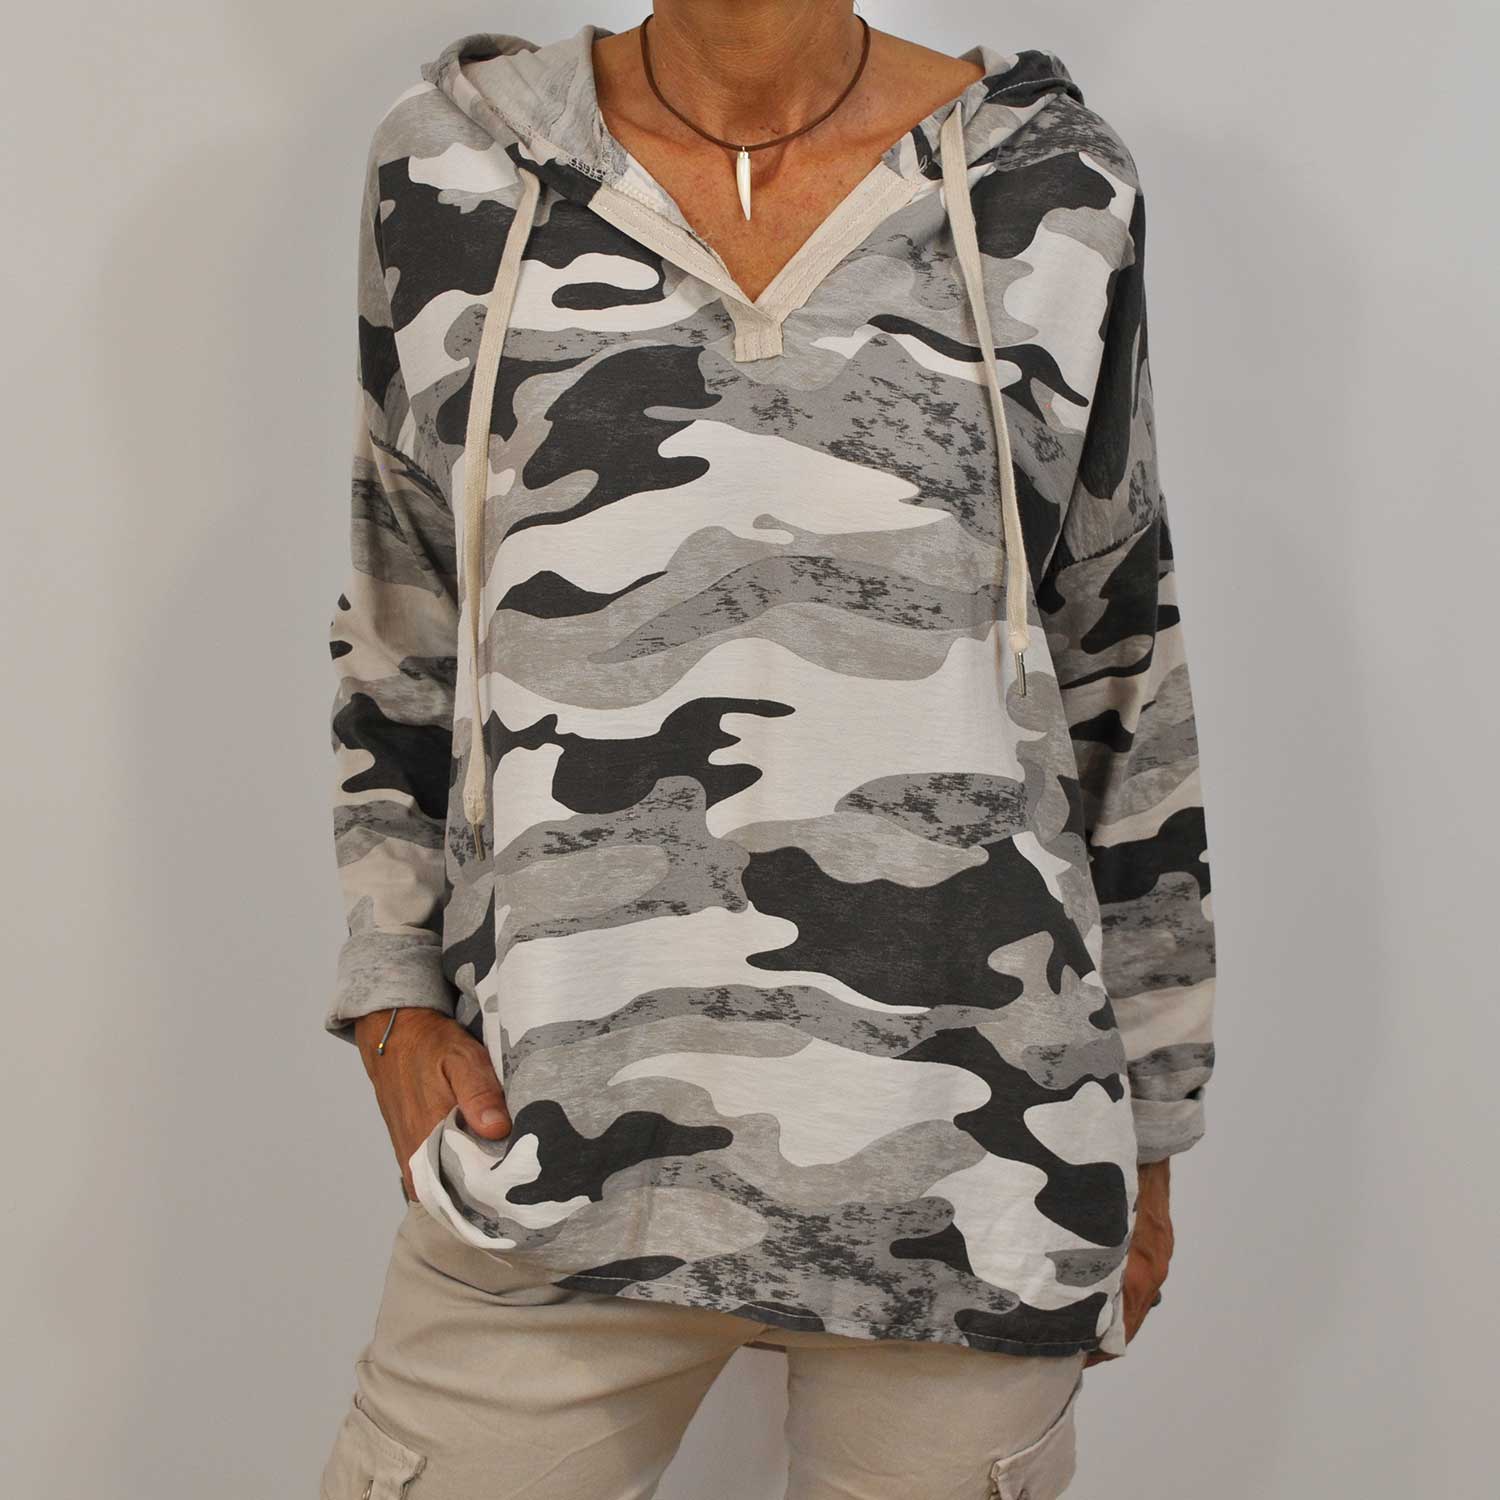 Grey camouflage sweatshirt
